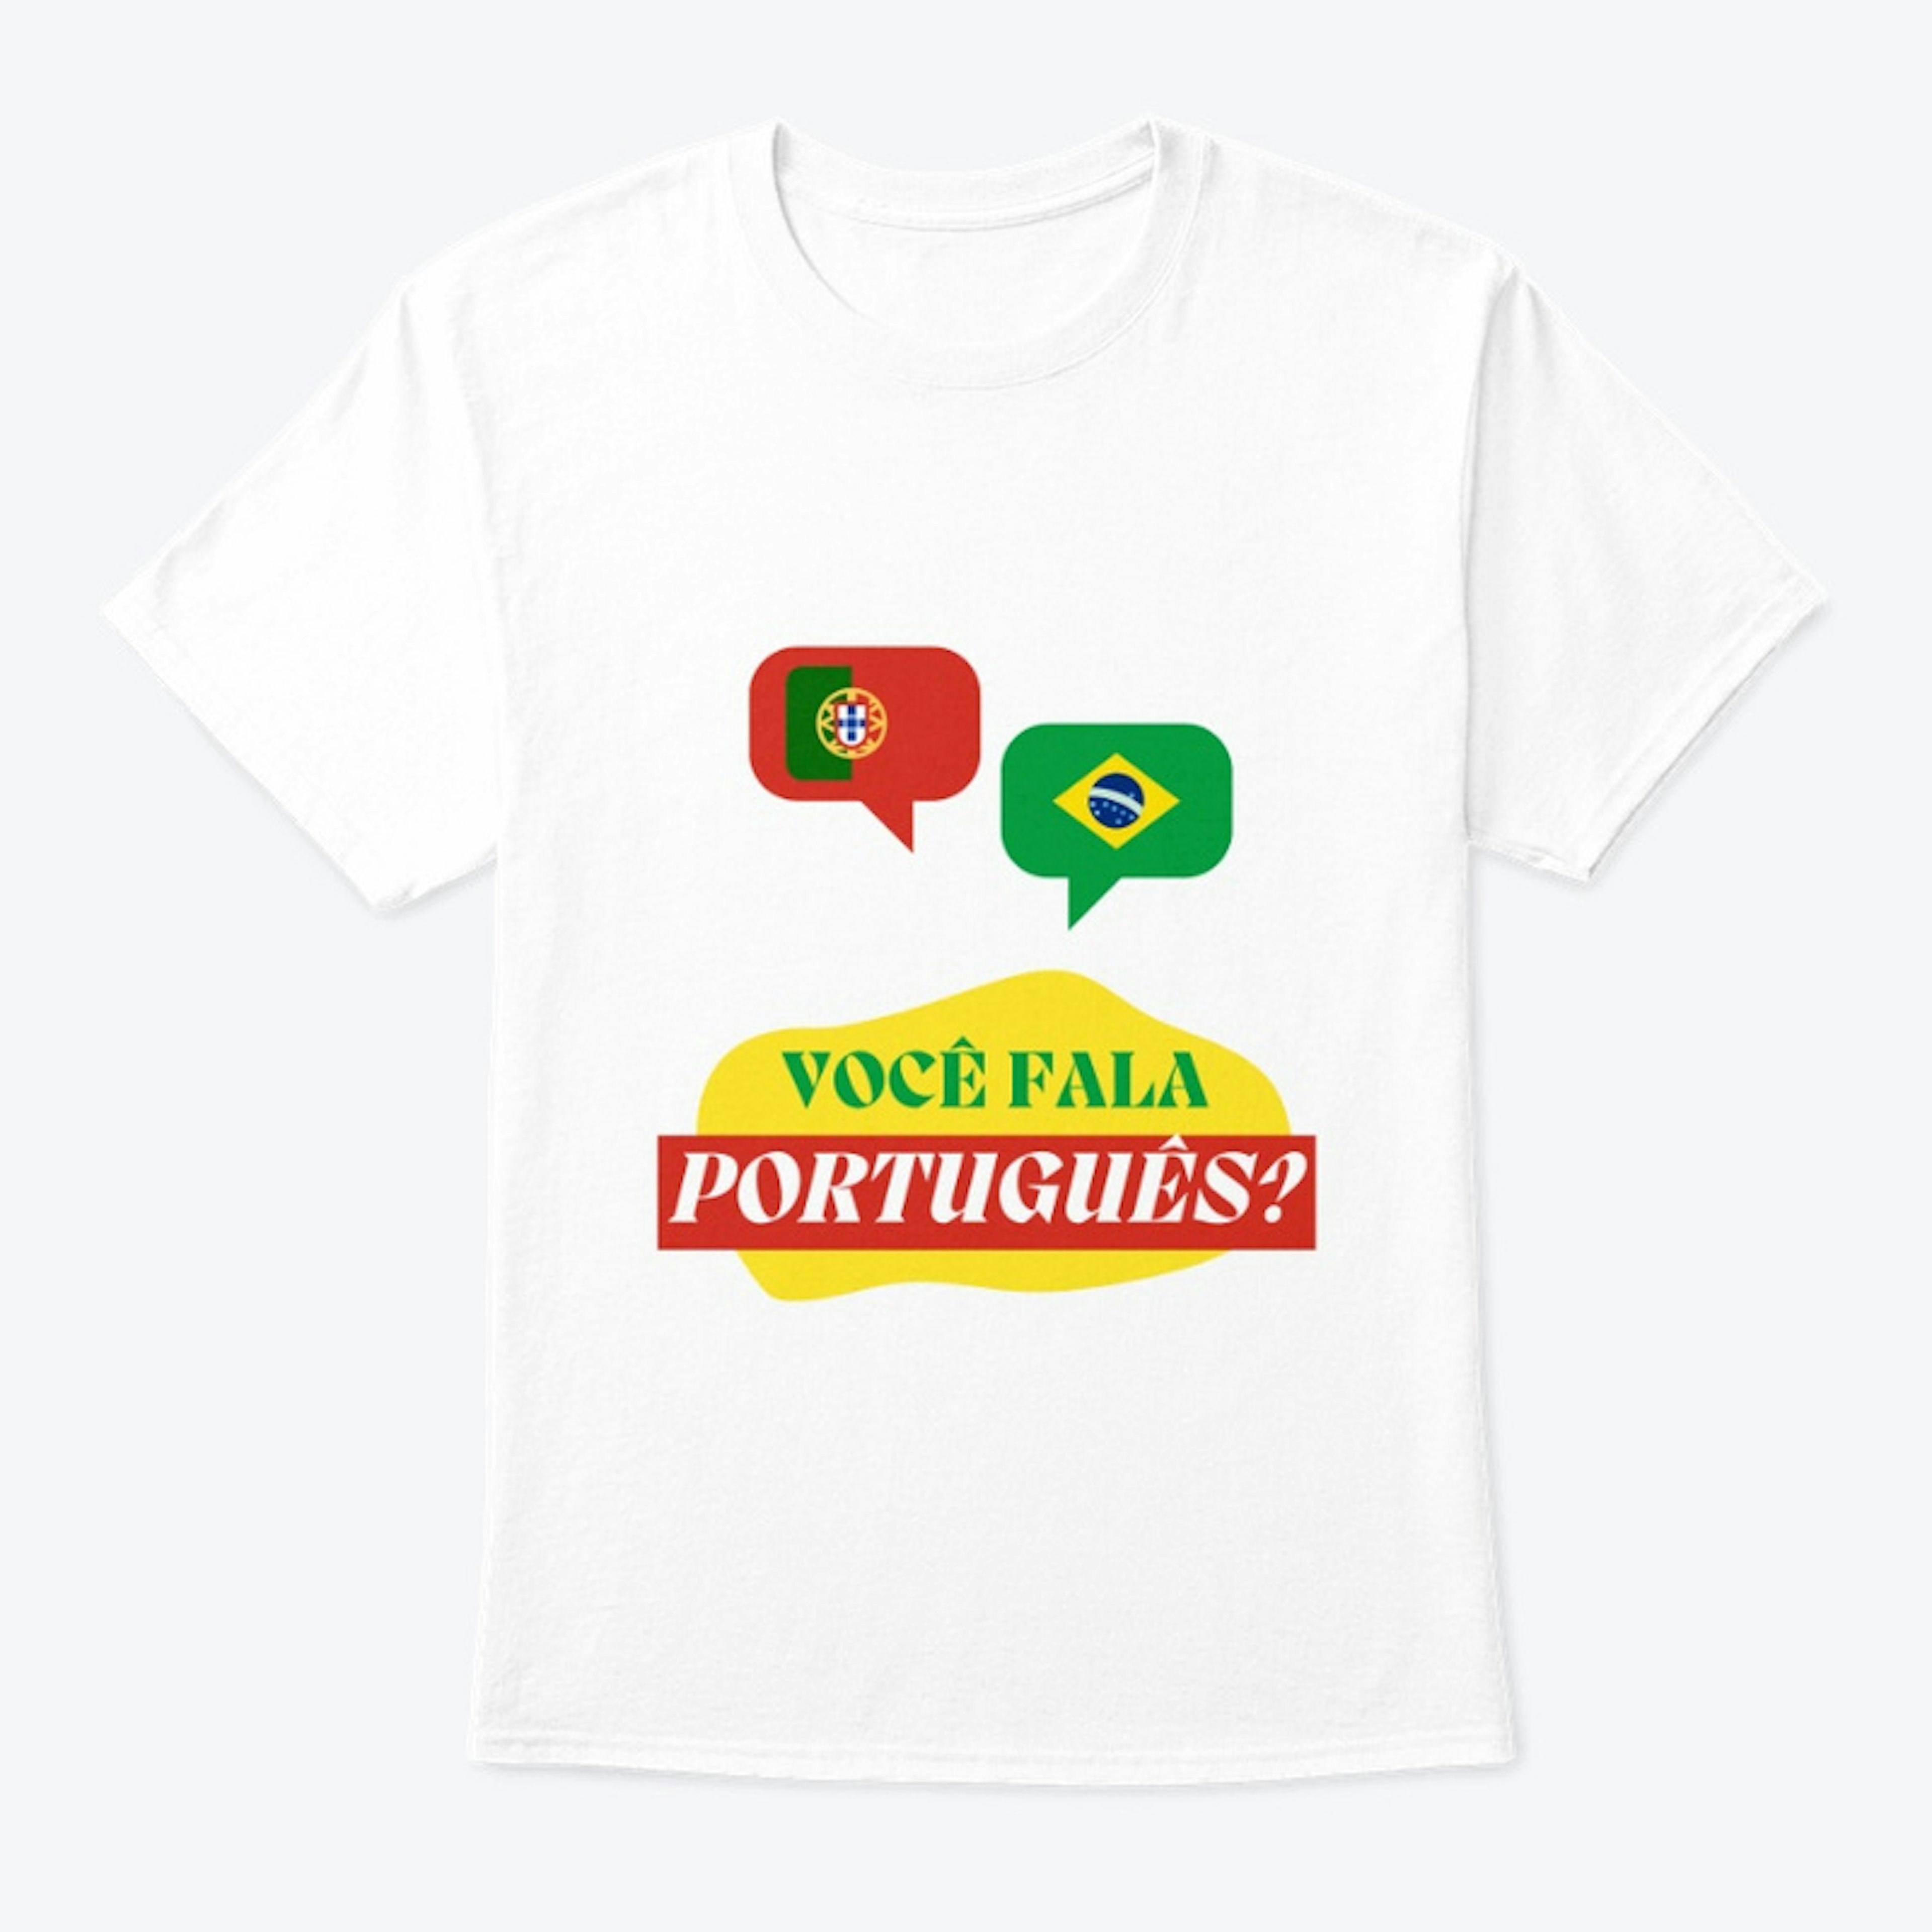 Você fala português?